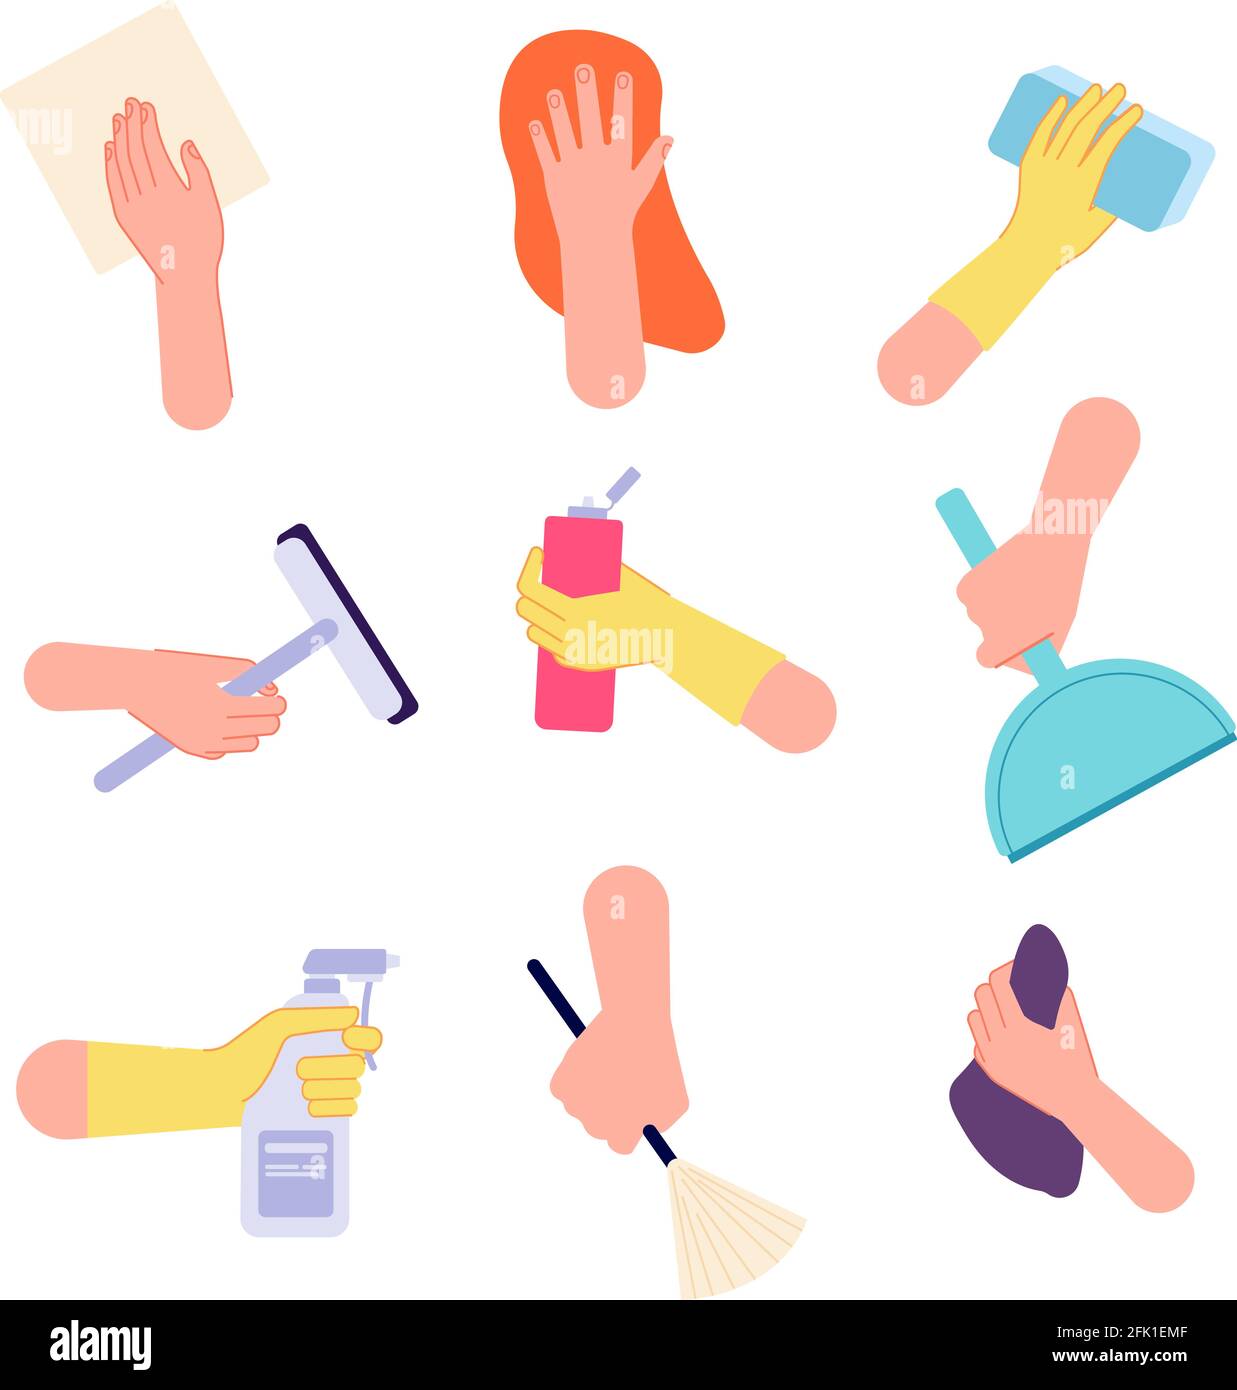 Limpieza de manos. Riego de manos, sosteniendo toallitas higiénicas para botellas de spray. Iconos de tareas domésticas aislados con herramientas de detergente ilustración vectorial Ilustración del Vector